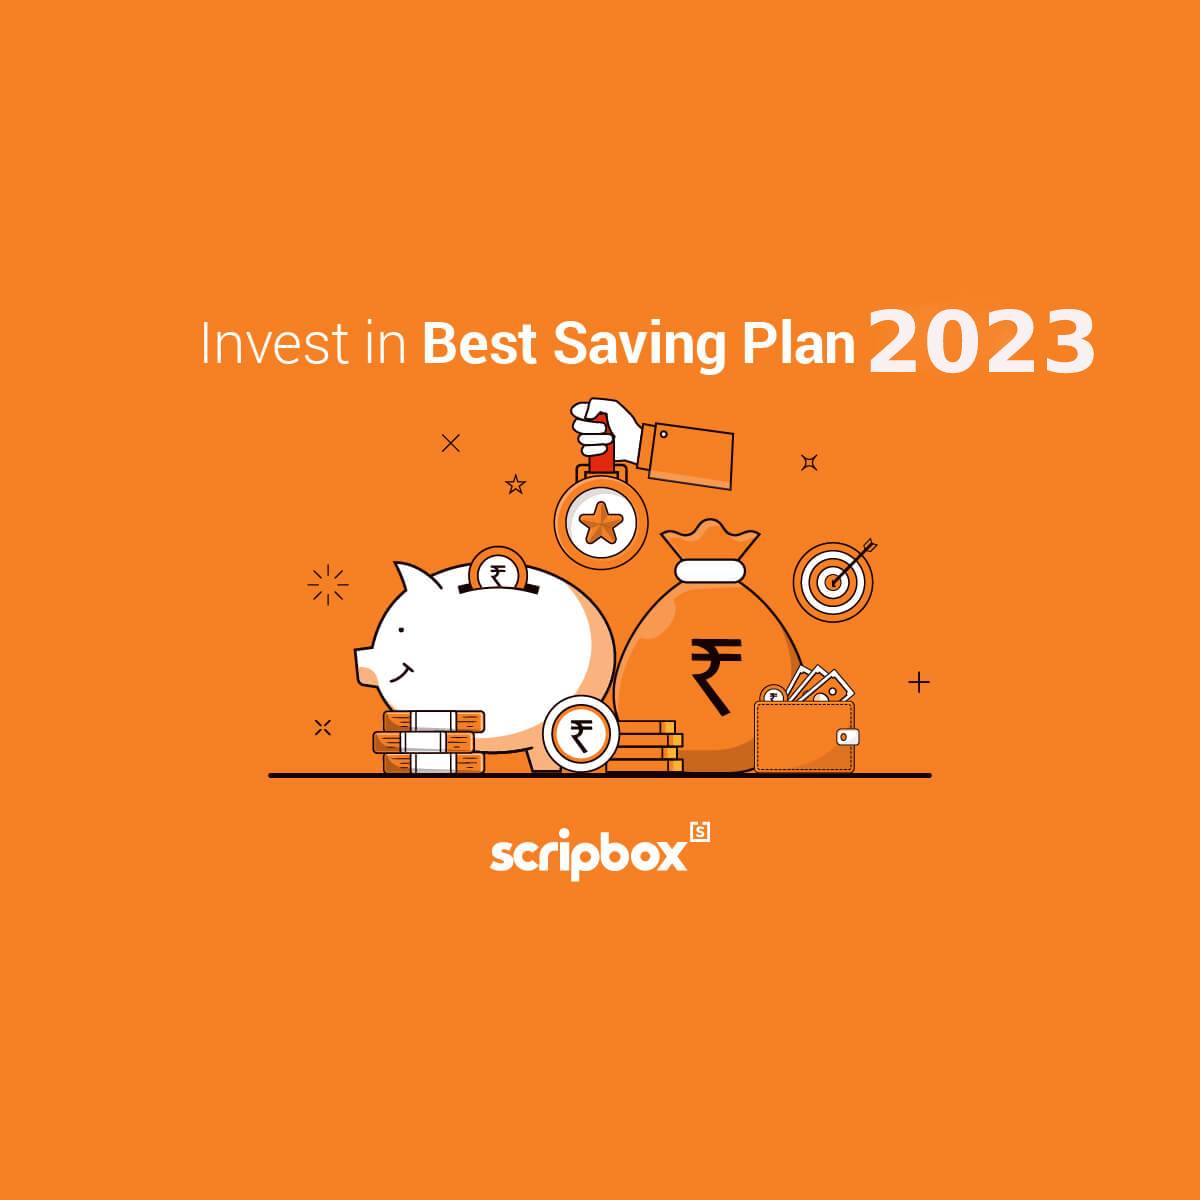 Best Saving Plan 2023